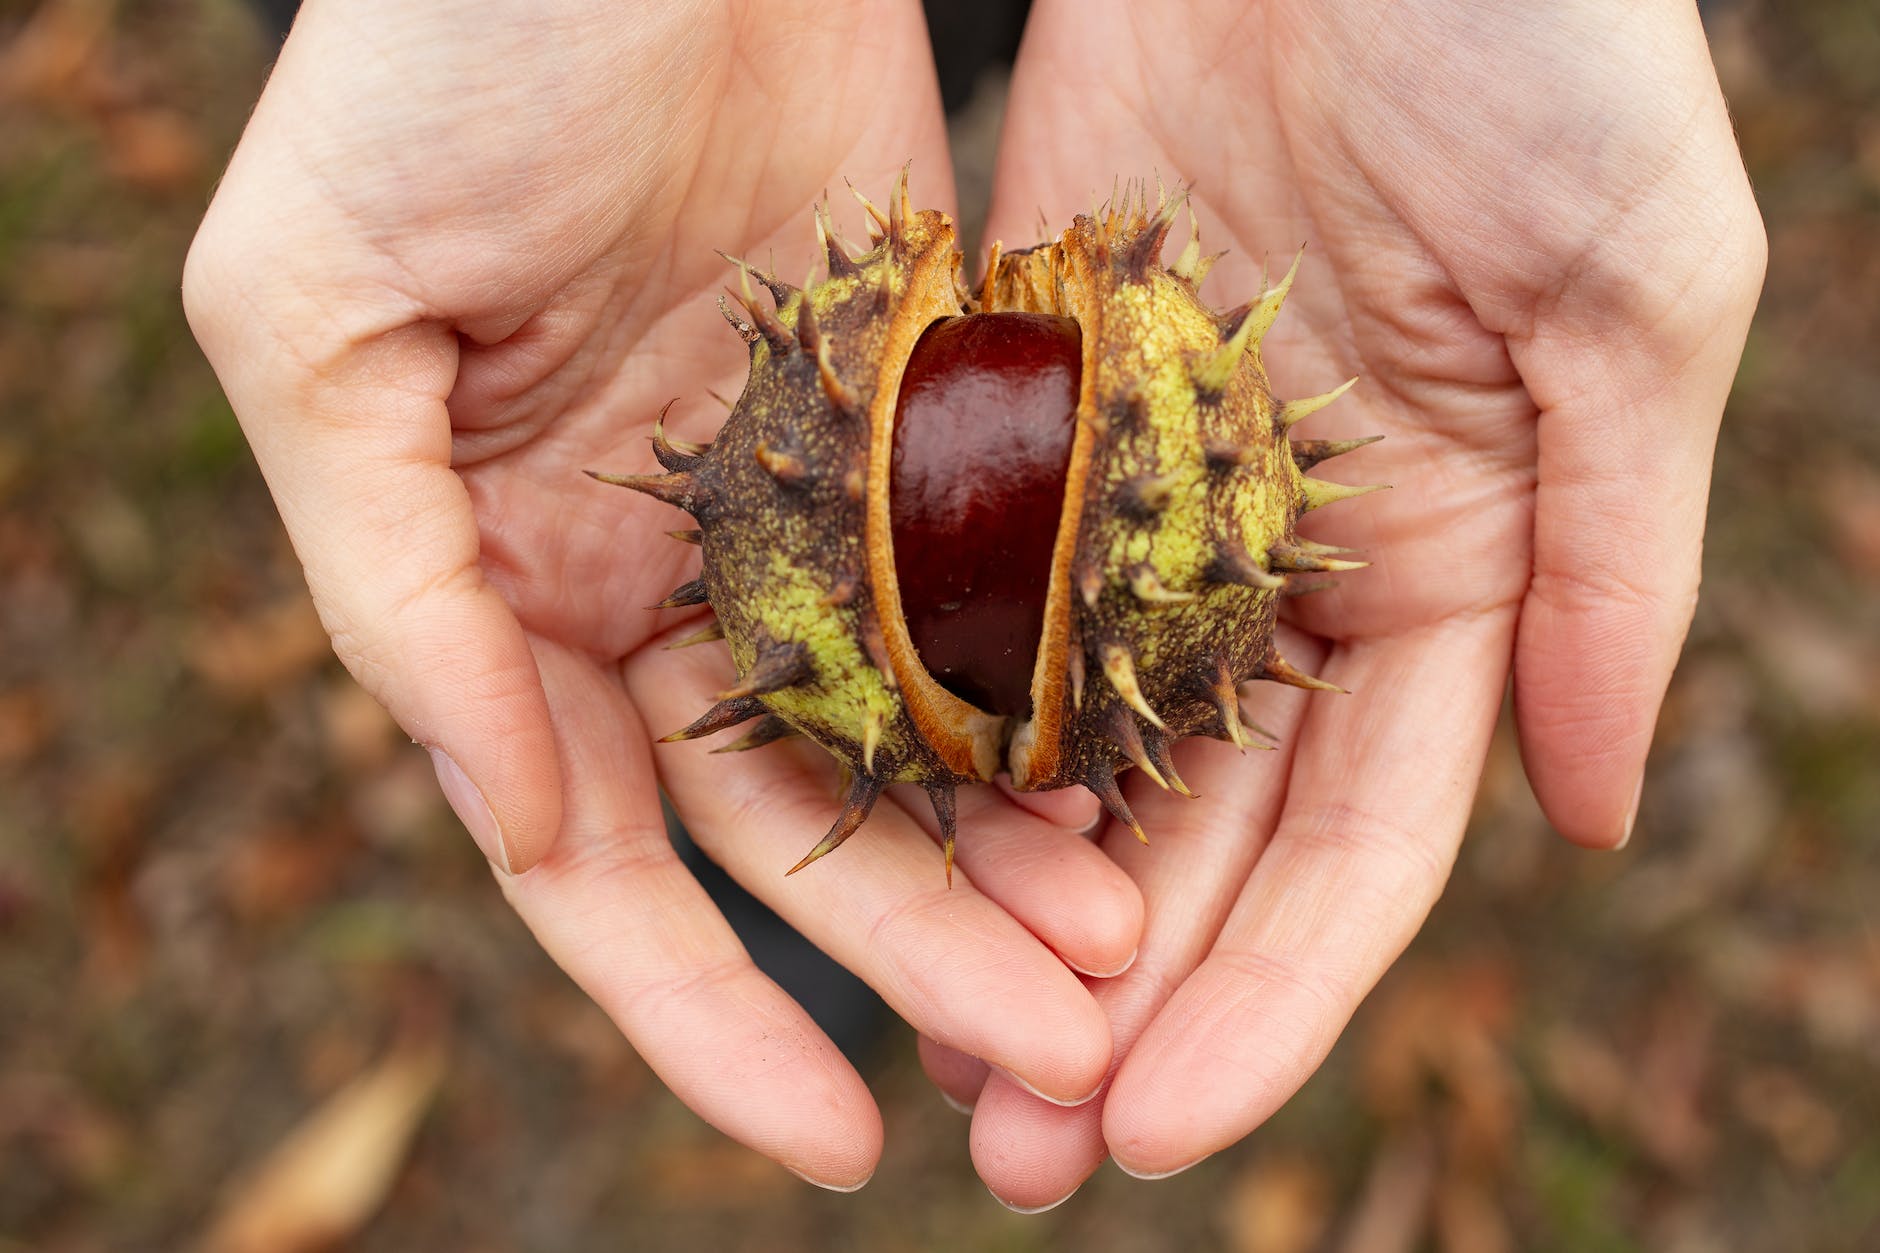 सिंघाड़े (Chestnut)की तासीर कैसी होती है – गर्म होती है या ठंडी